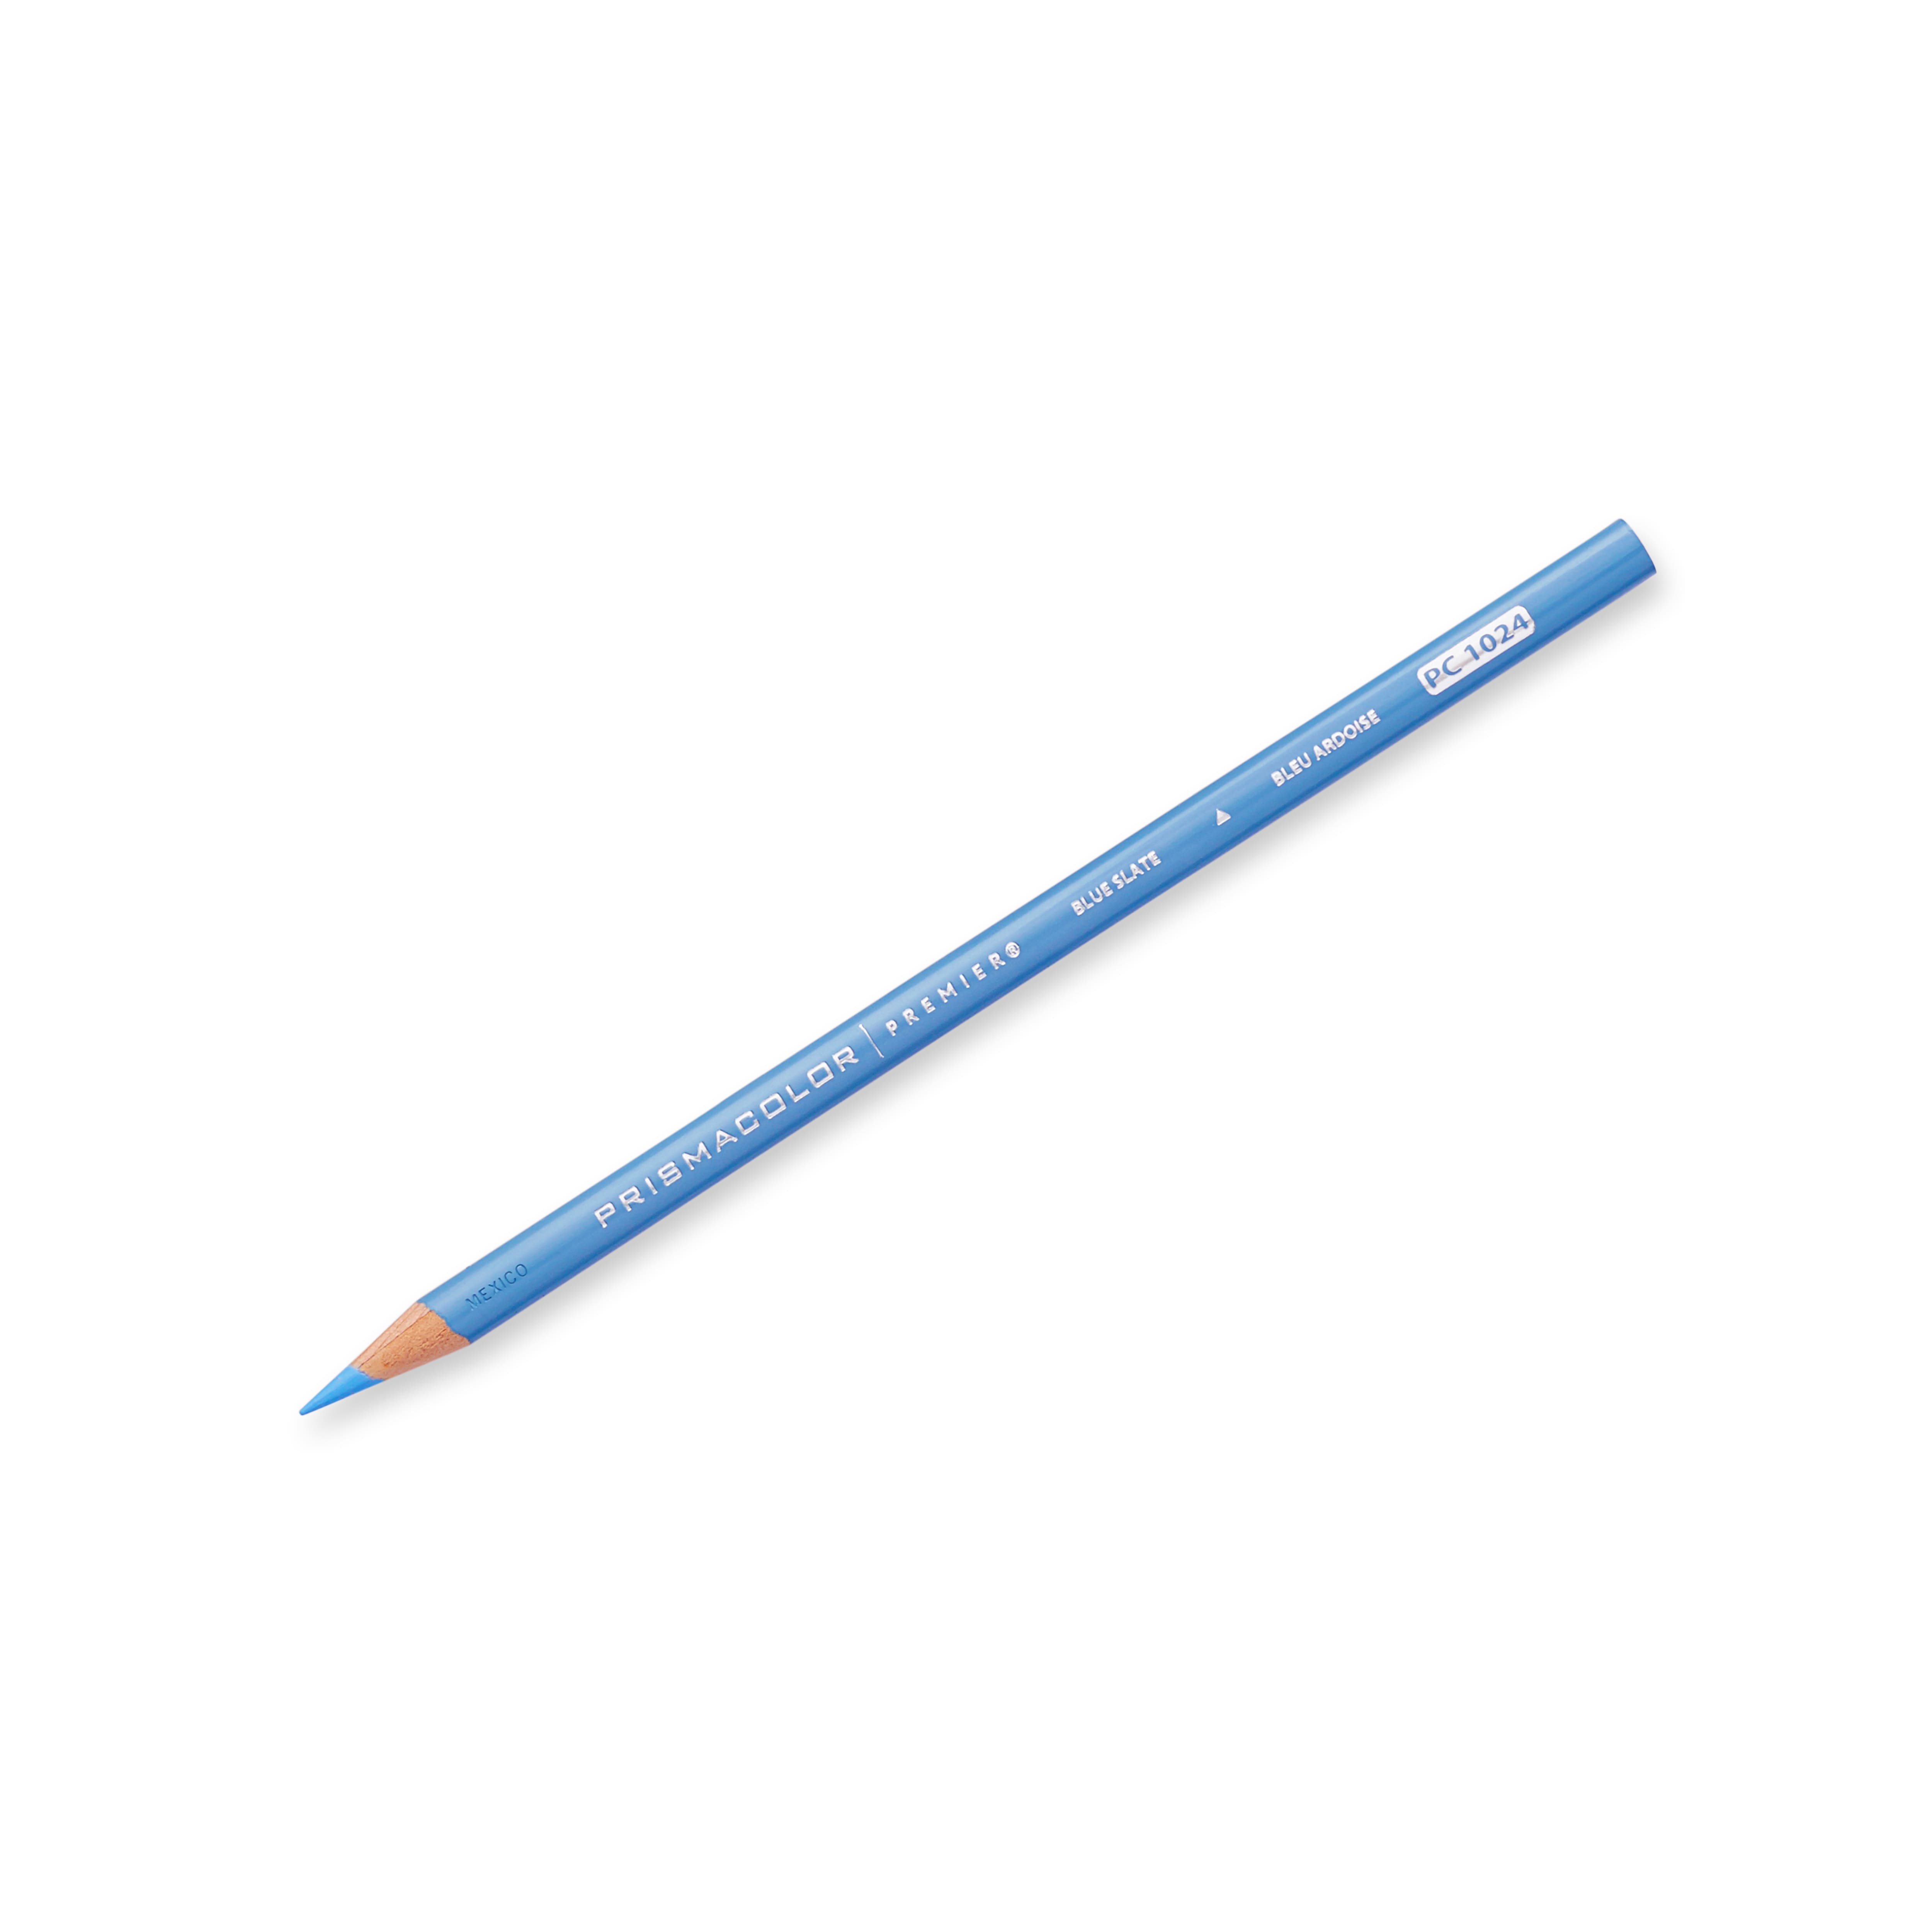 Prismacolor® Premier® Soft Core Colored Pencil Set, Michaels